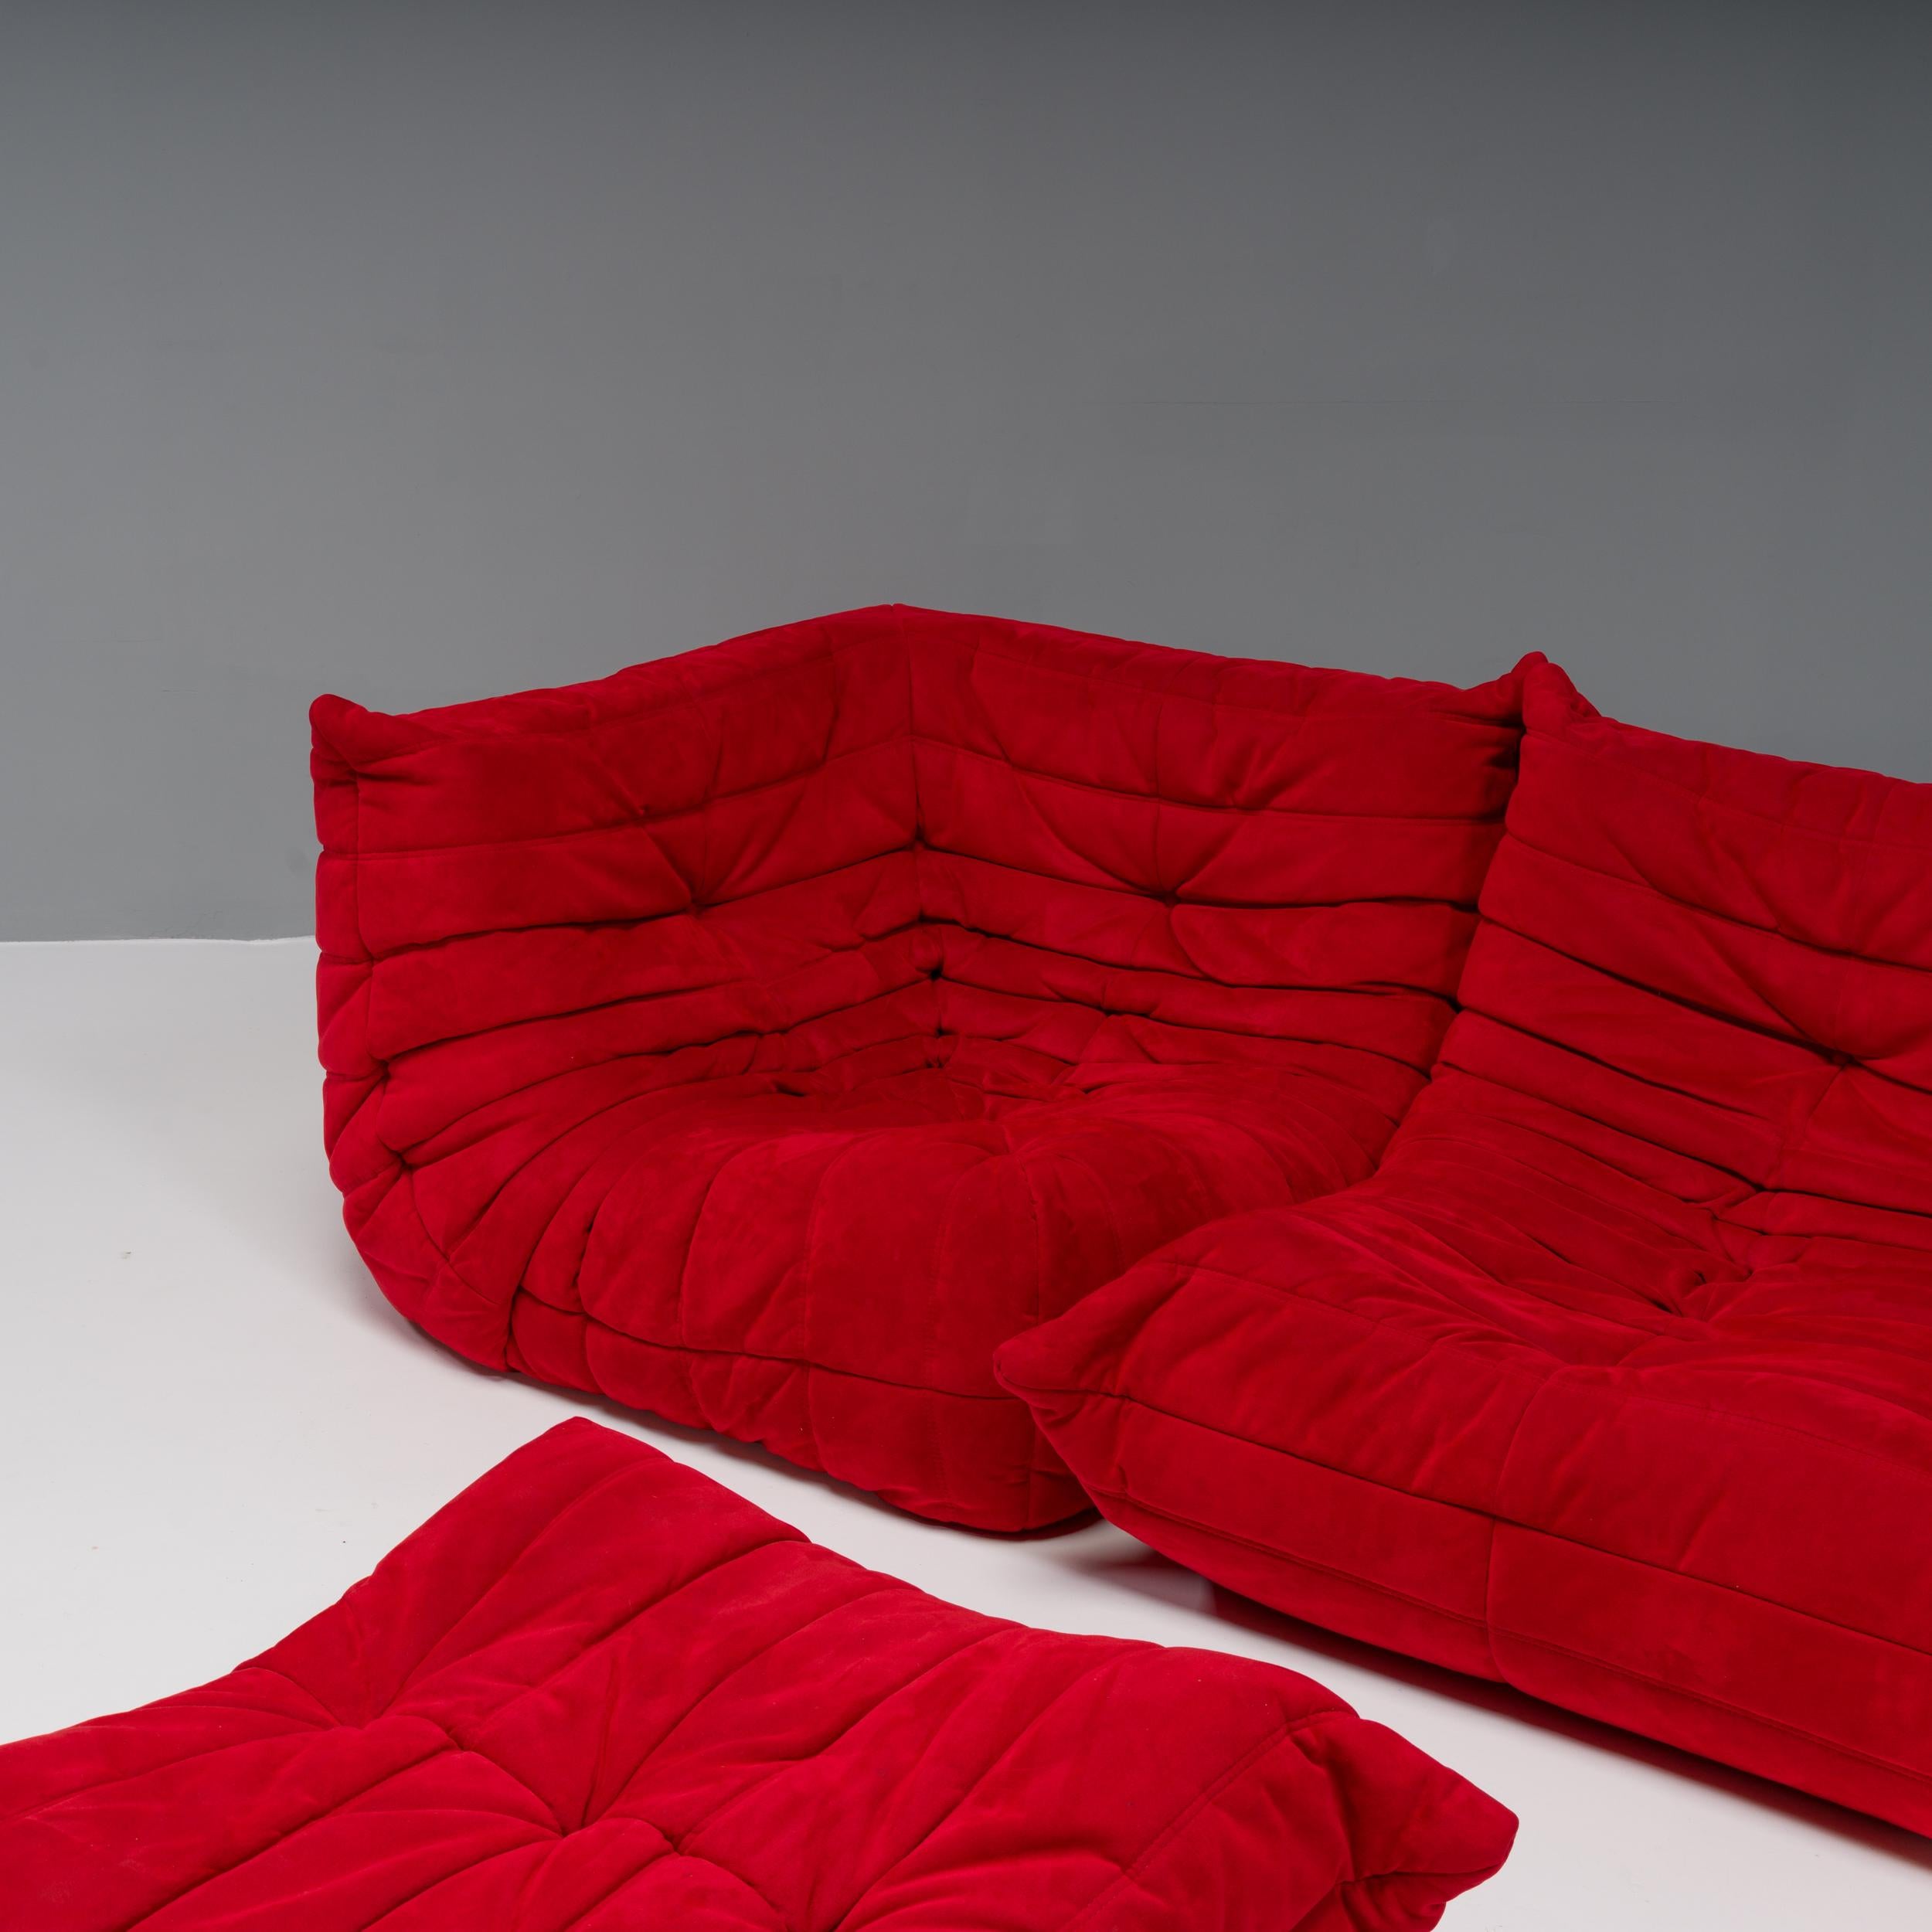 Das ikonische Sofa Togo, ursprünglich von Michel Ducaroy für Ligne Roset im Jahr 1973 entworfen, ist ein Designklassiker.

Dieses vierteilige modulare Set ist unglaublich vielseitig und kann zu einem großen Ecksofa mit Fußhocker konfiguriert oder